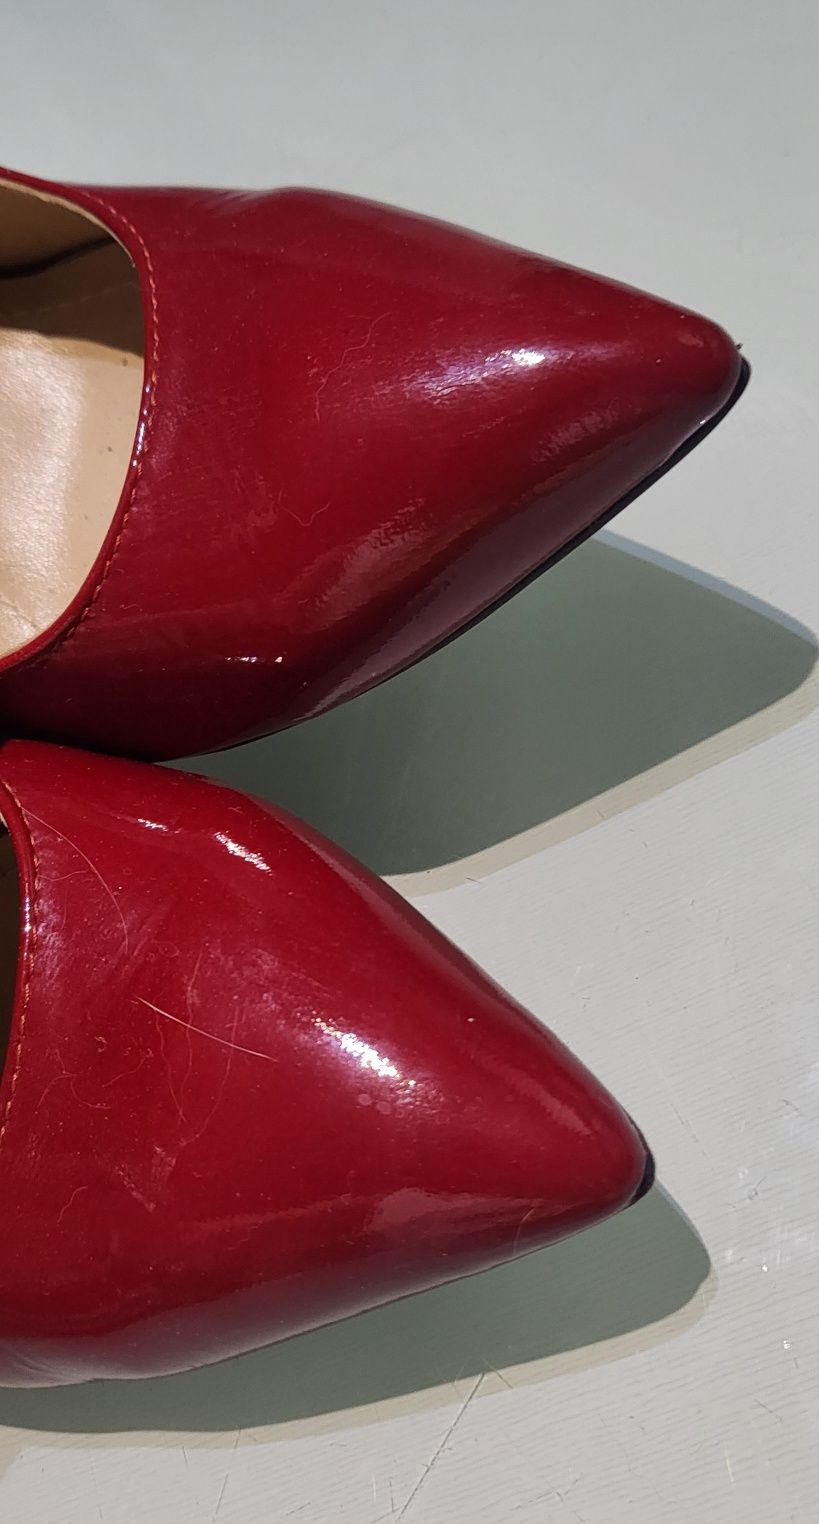 Pantofi stiletto 37, piele naturală, roşii